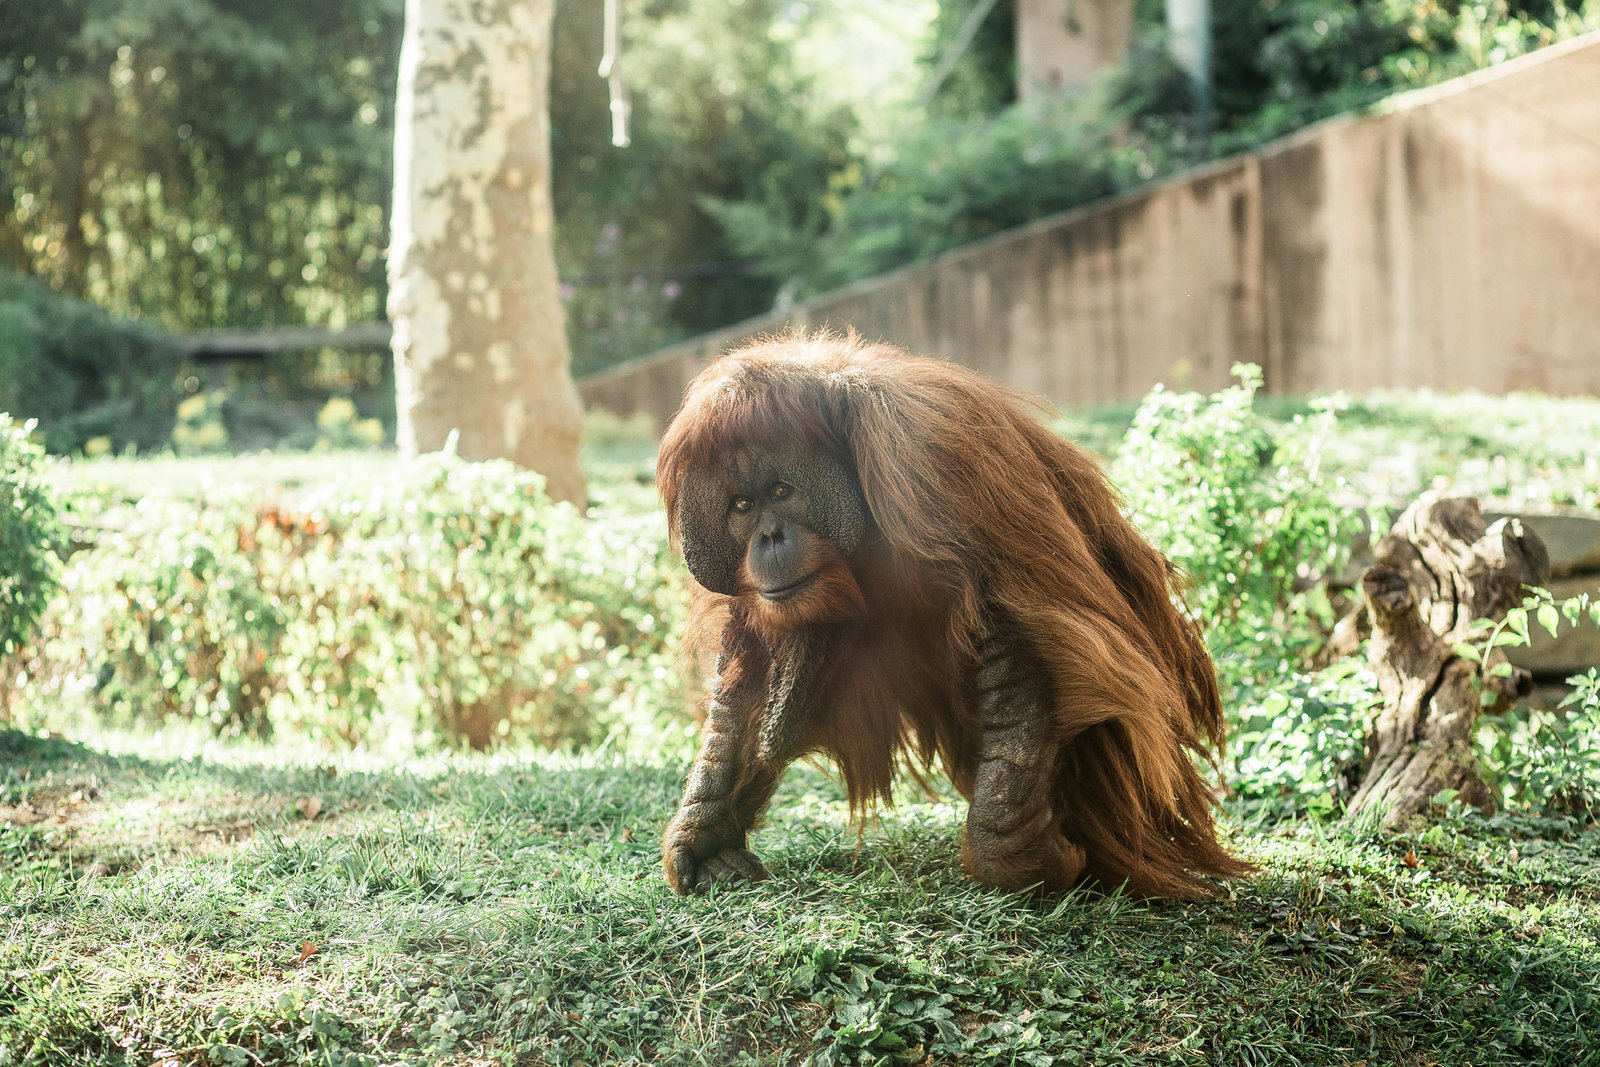 orangutan-primate-zoo-nature-philadelphia-pa-kate-timbers-photography-2040